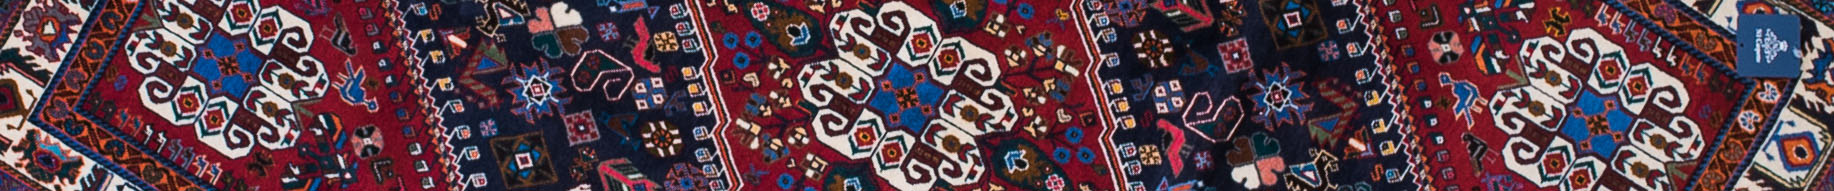 Abadeh Persian Carpet Rug N1Carpet Canada Montreal Tapis Persan 2990